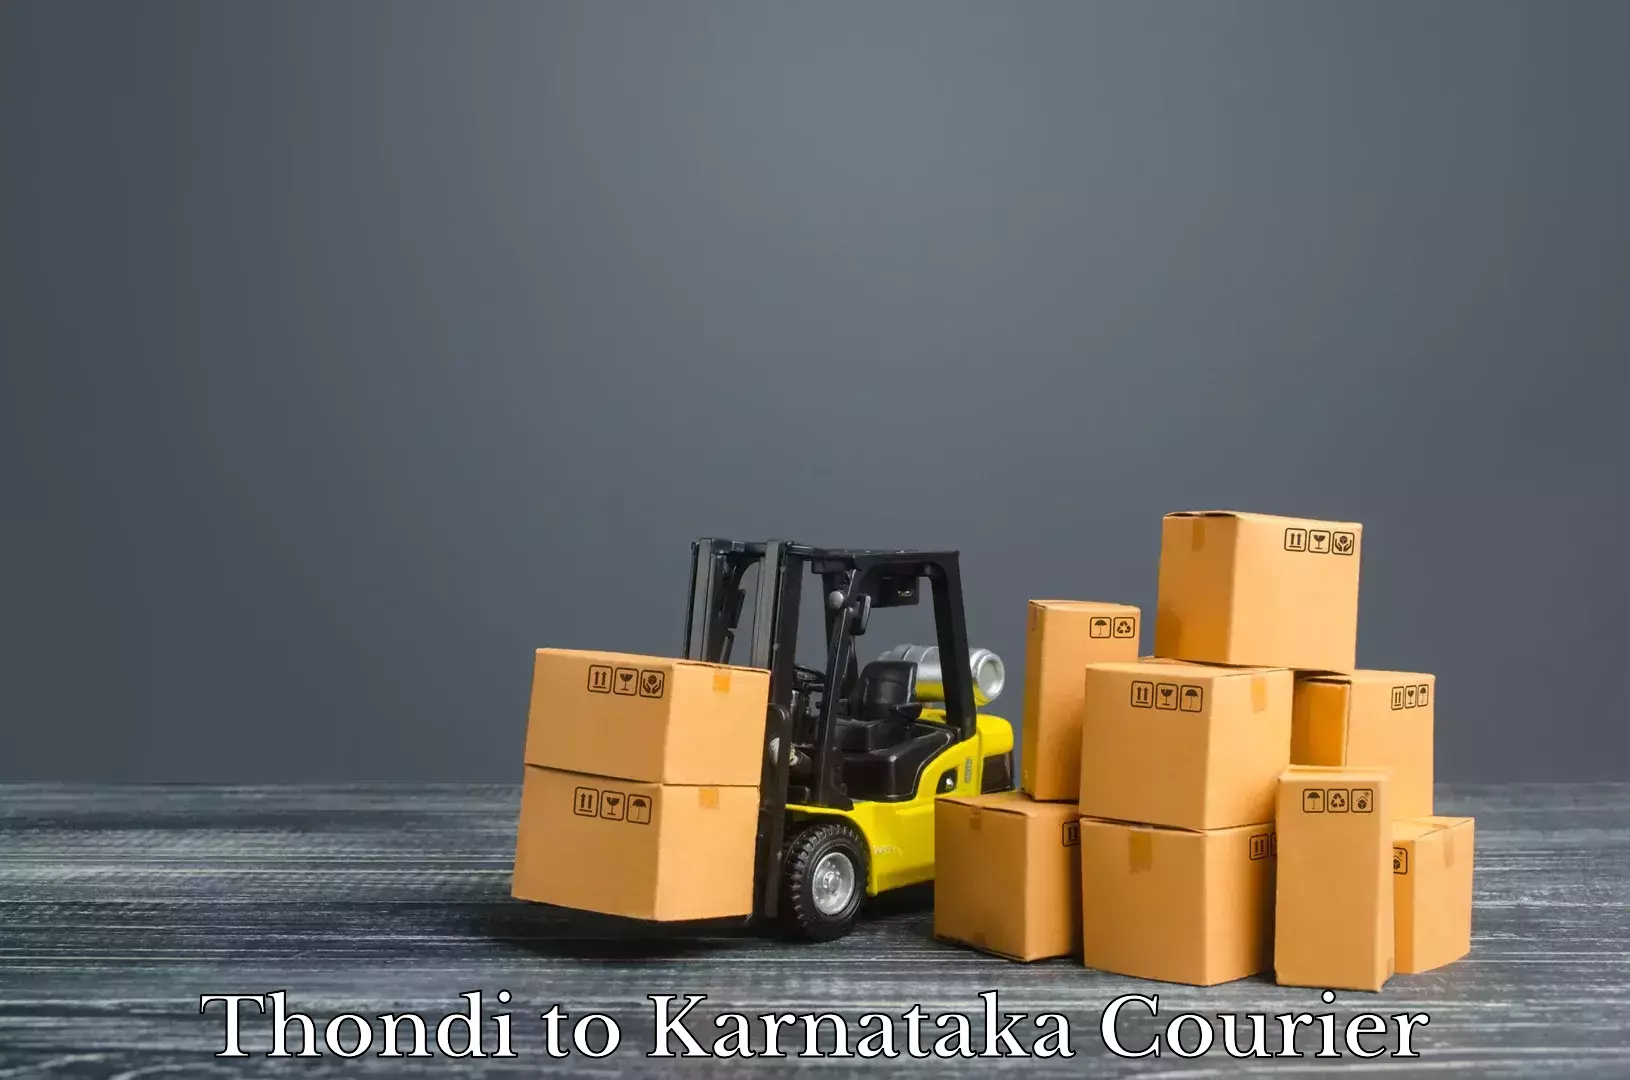 Baggage shipping experts Thondi to Karnataka